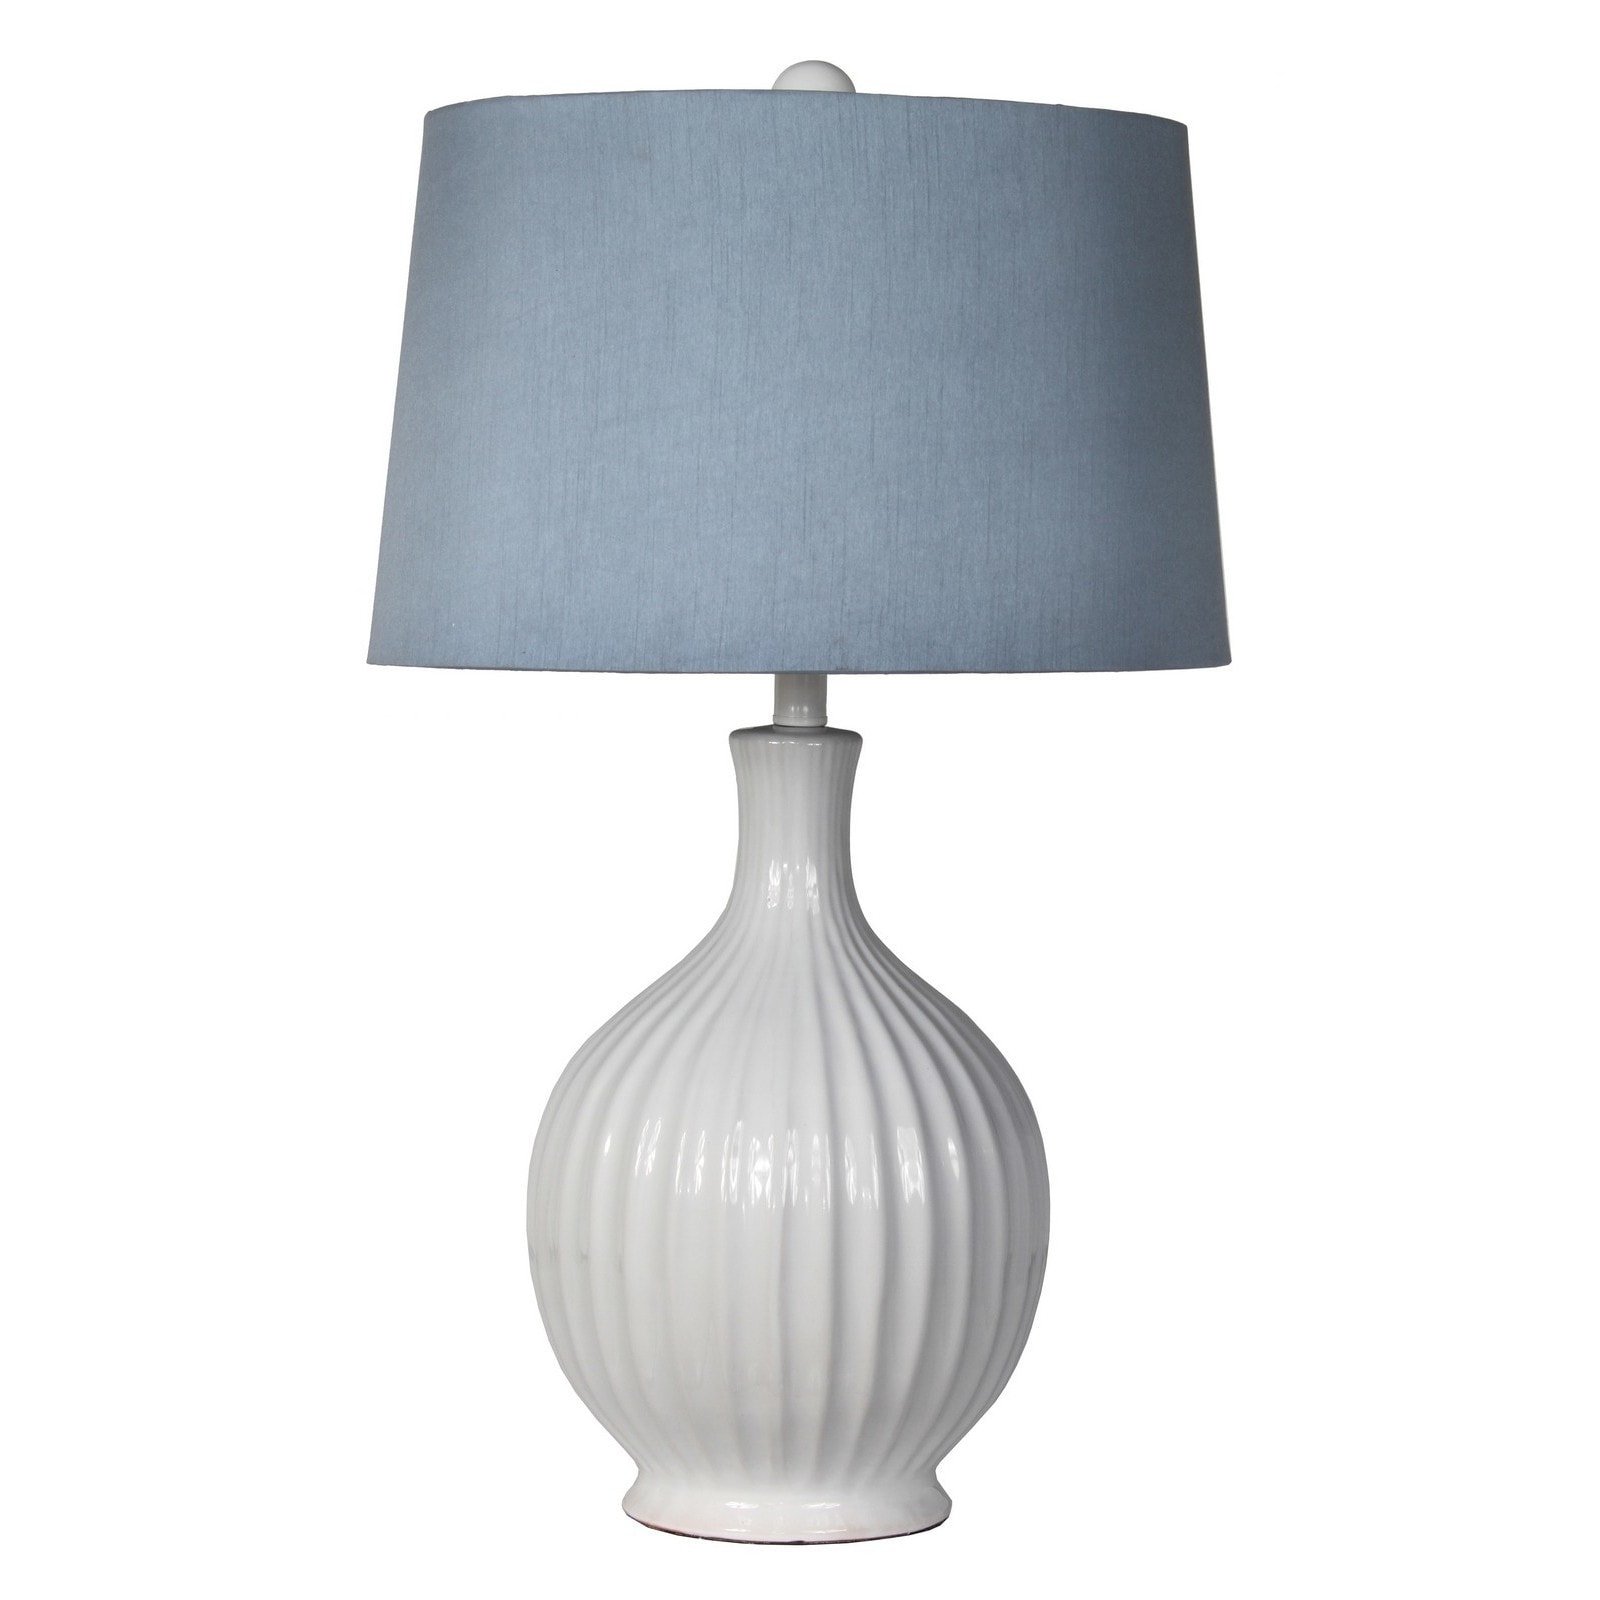 1-light White/ Blue Ceramic Table Lamp